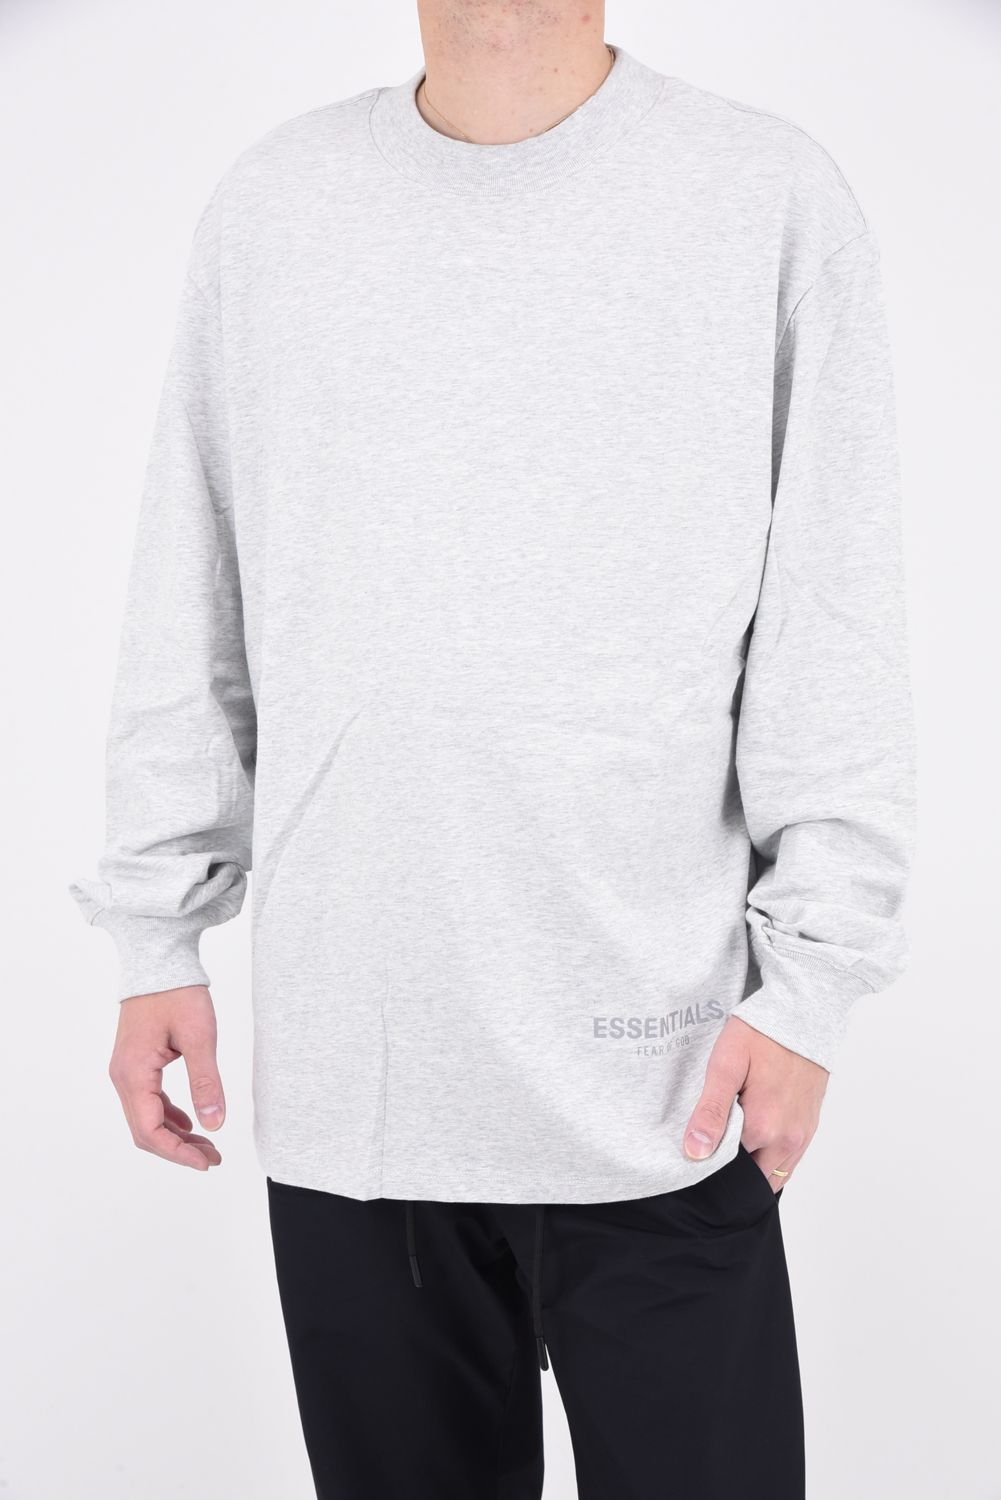 Tシャツ/カットソー(七分/長袖)FOG ESSENTIALS リフレクターロゴ ロンT グレー S